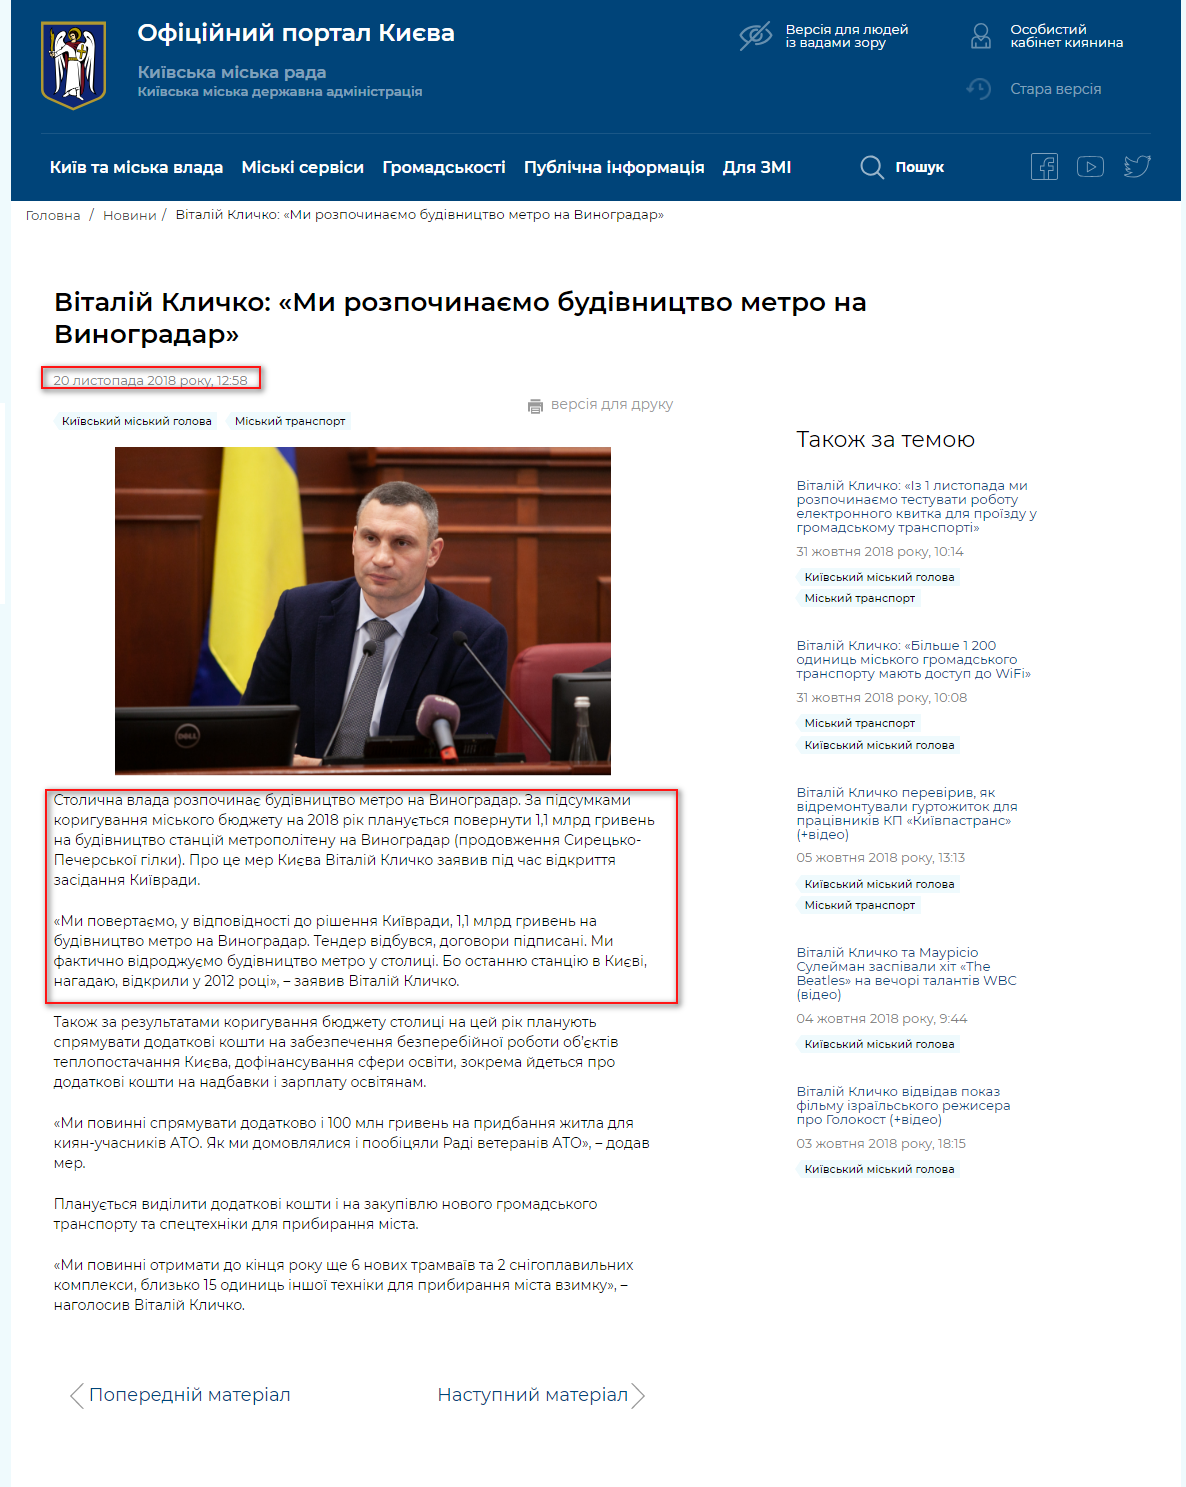 https://kyivcity.gov.ua/news/vitaliy_klichko_mi_rozpochinayemo_budivnitstvo_metro_na_vinogradar.html